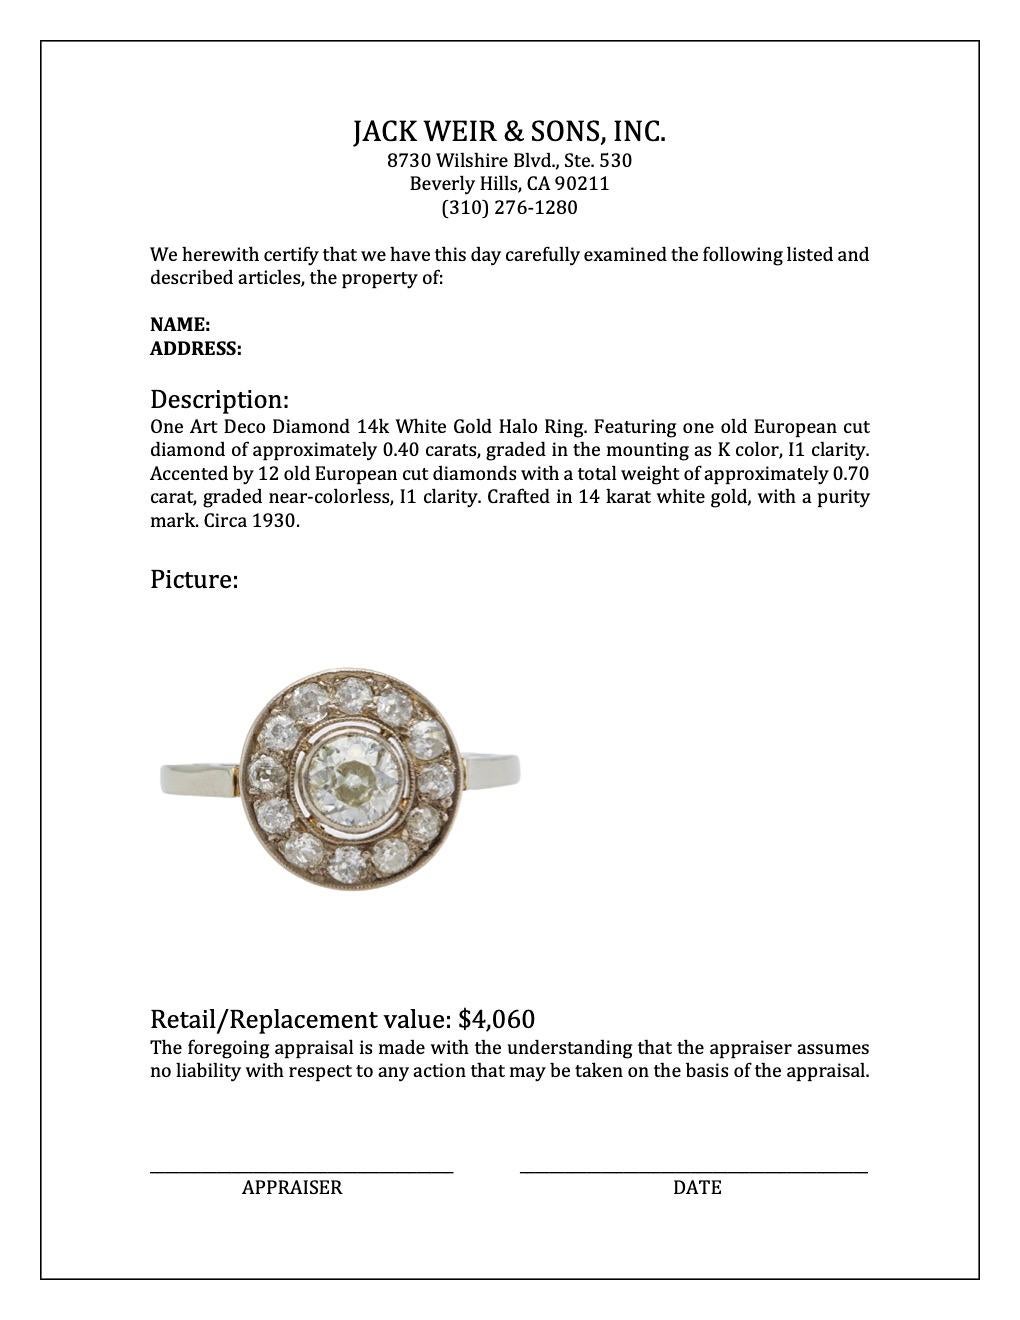 Women's or Men's Art Deco Diamond 14k White Gold Halo Ring